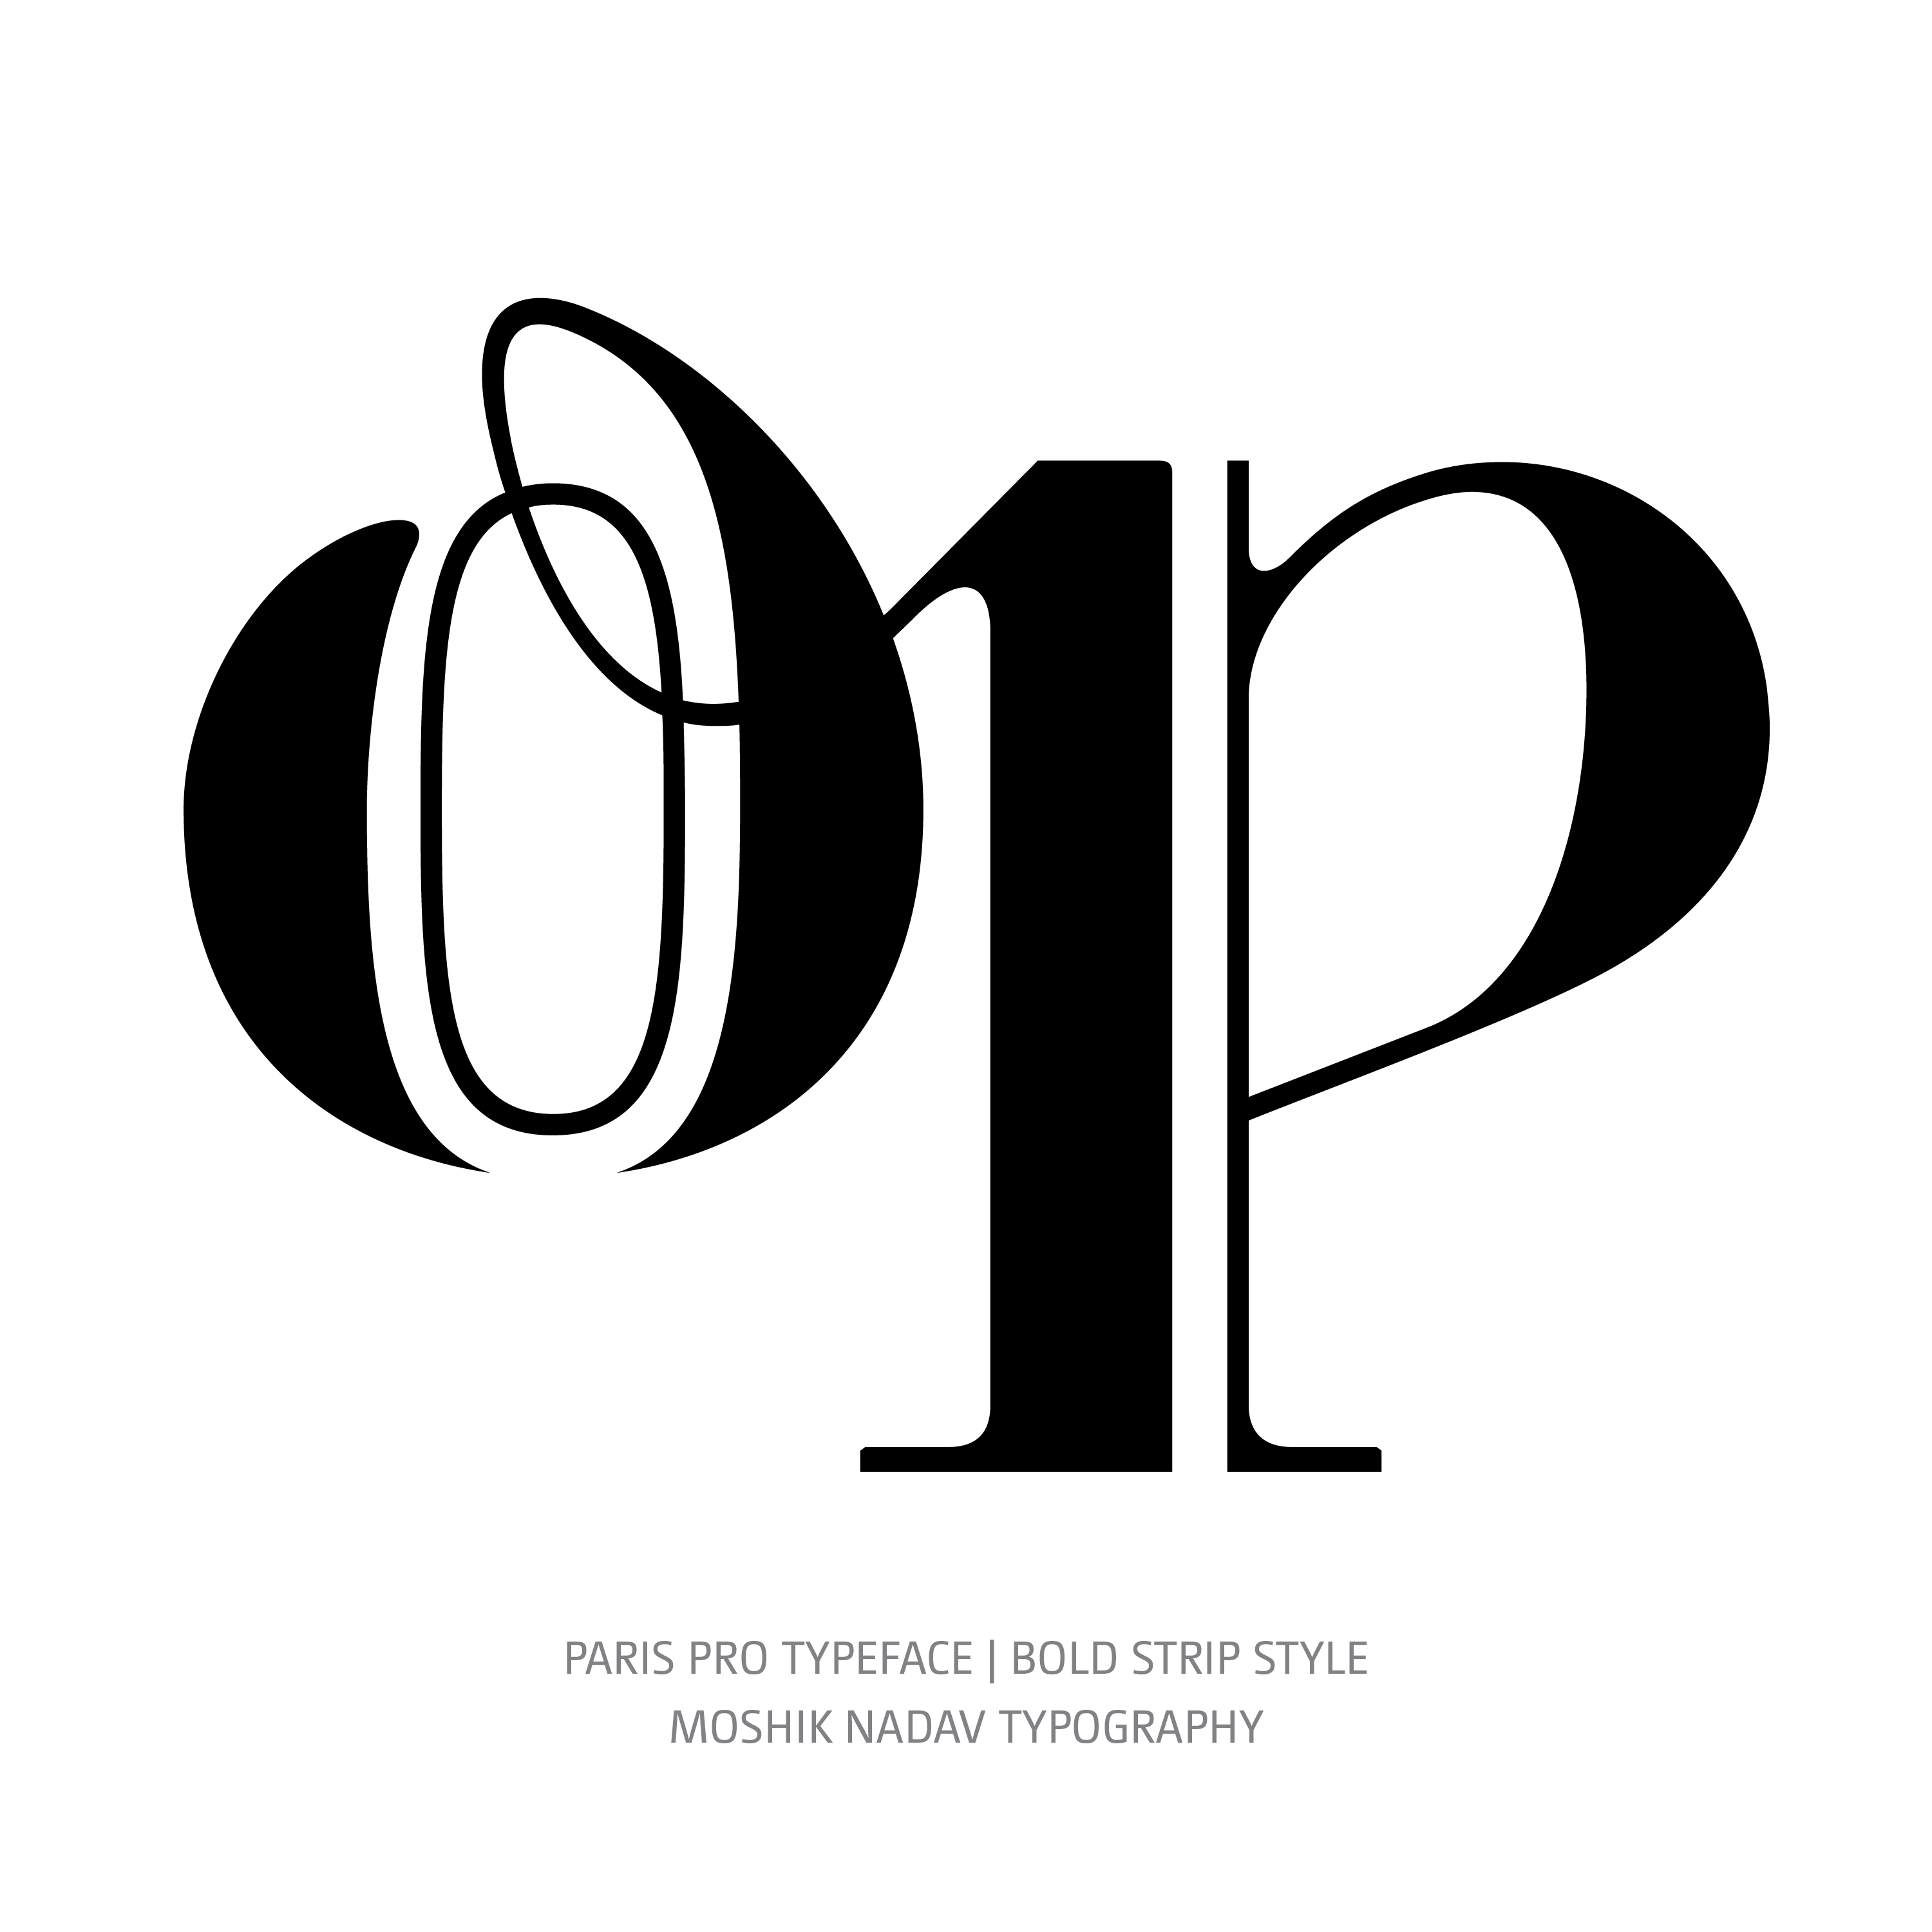 Paris Pro Typeface Bold Strip op ligature